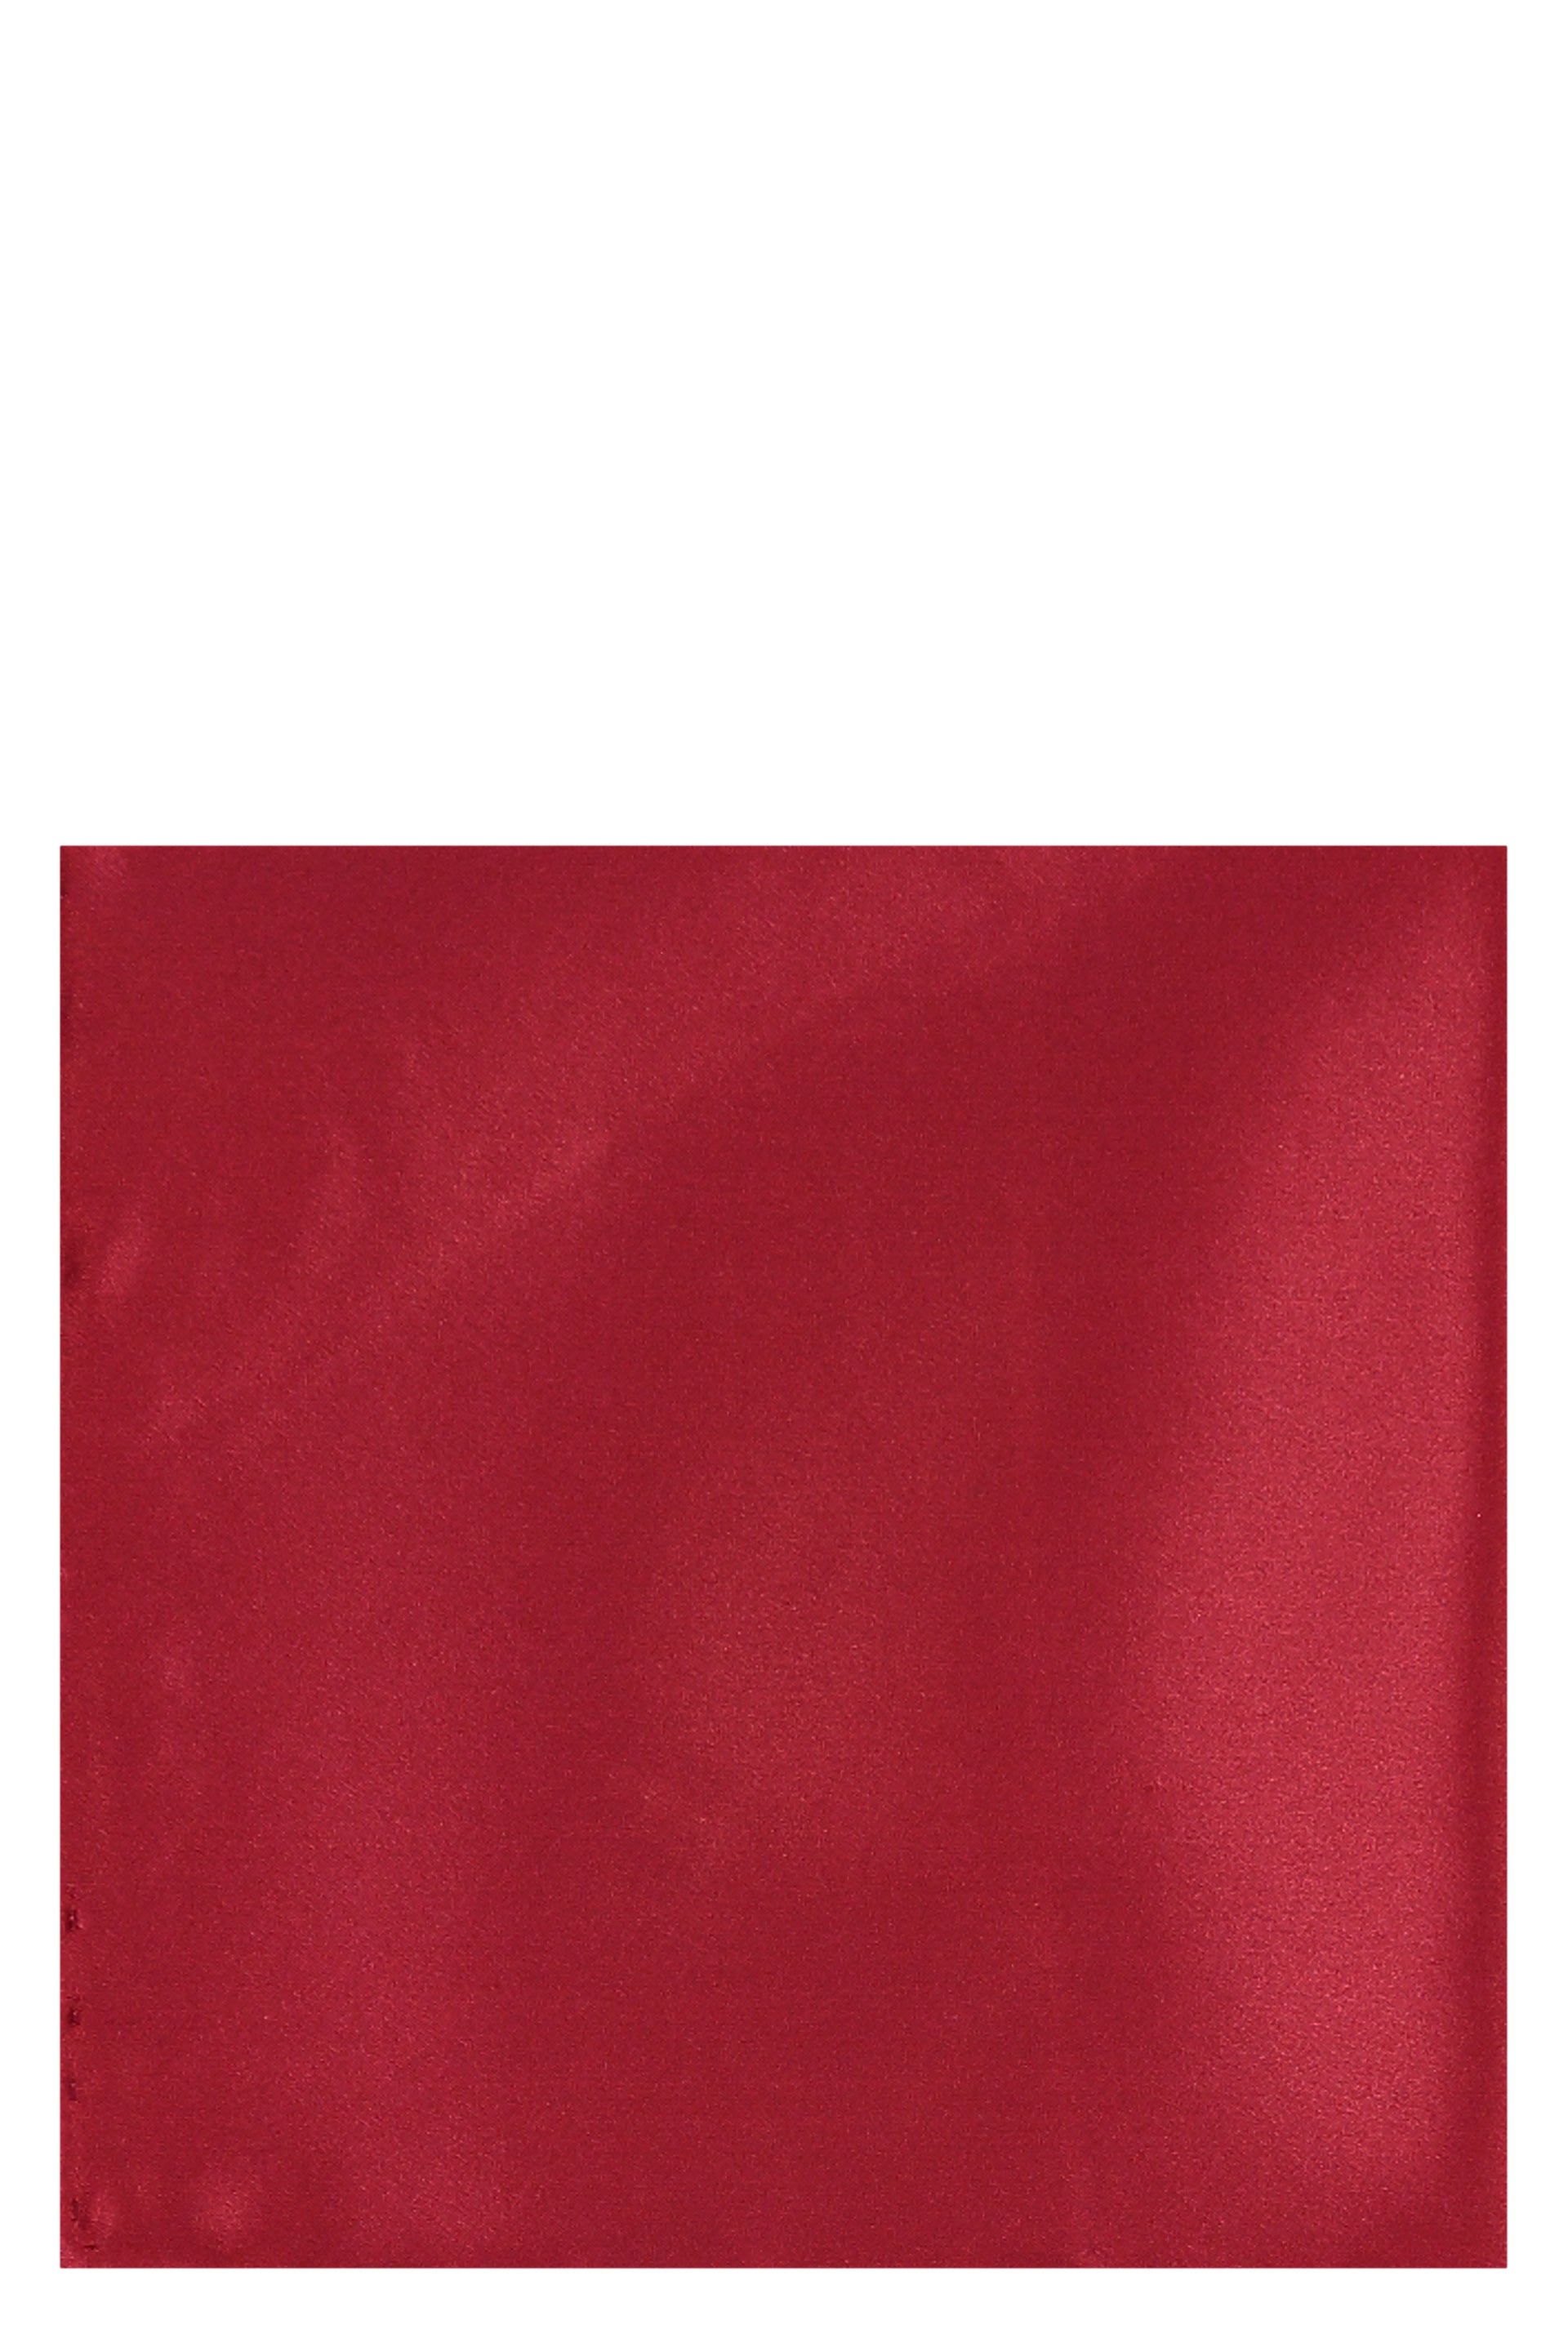 BRIONI-OUTLET-SALE-Hemmed-handkerchief-Accessoires-TU-ARCHIVE-COLLECTION-2_42ea643e-b067-4088-a9f5-8a0ffe8acf0c.jpg